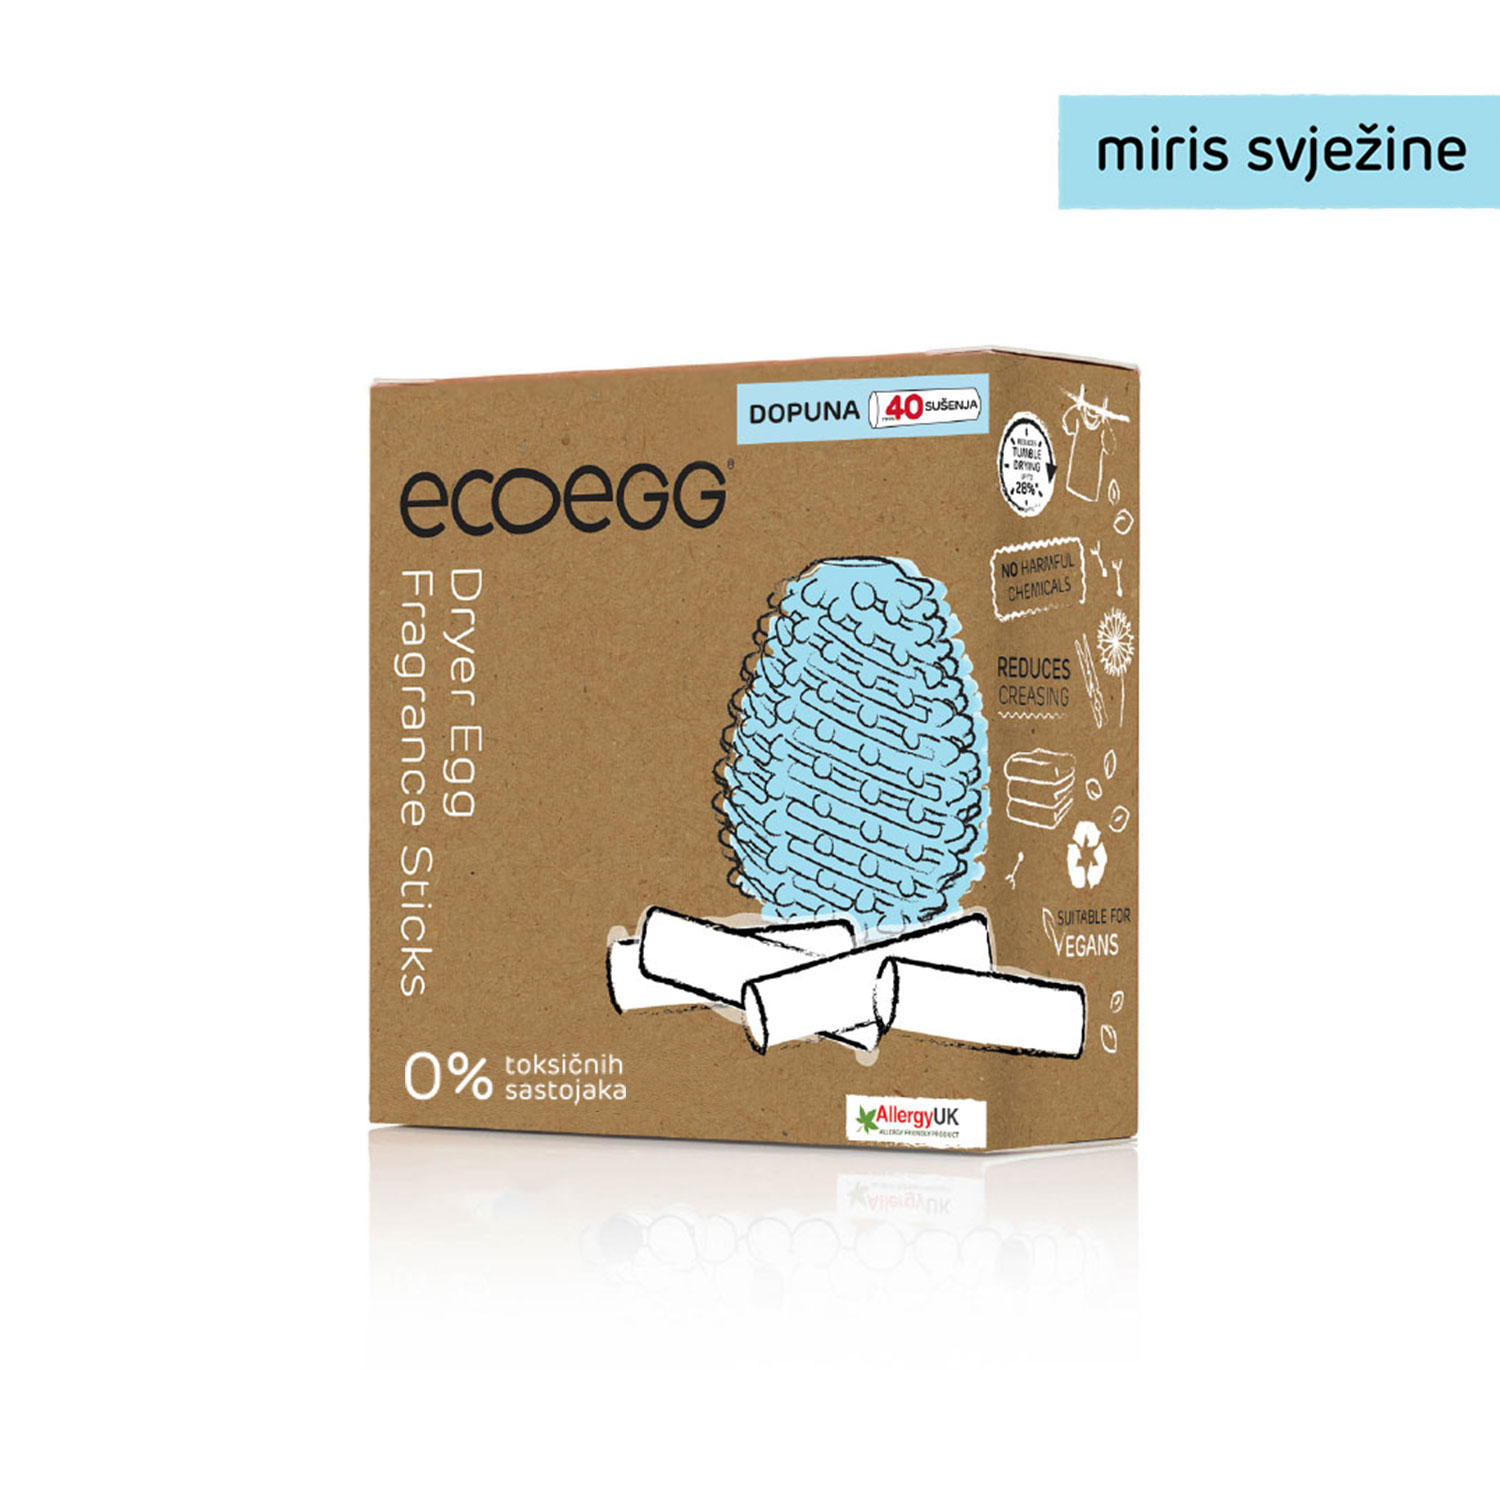 ECOEGG 3u1 dopuna za eko-jaja za sušilicu, Miris svježine-40 sušenja